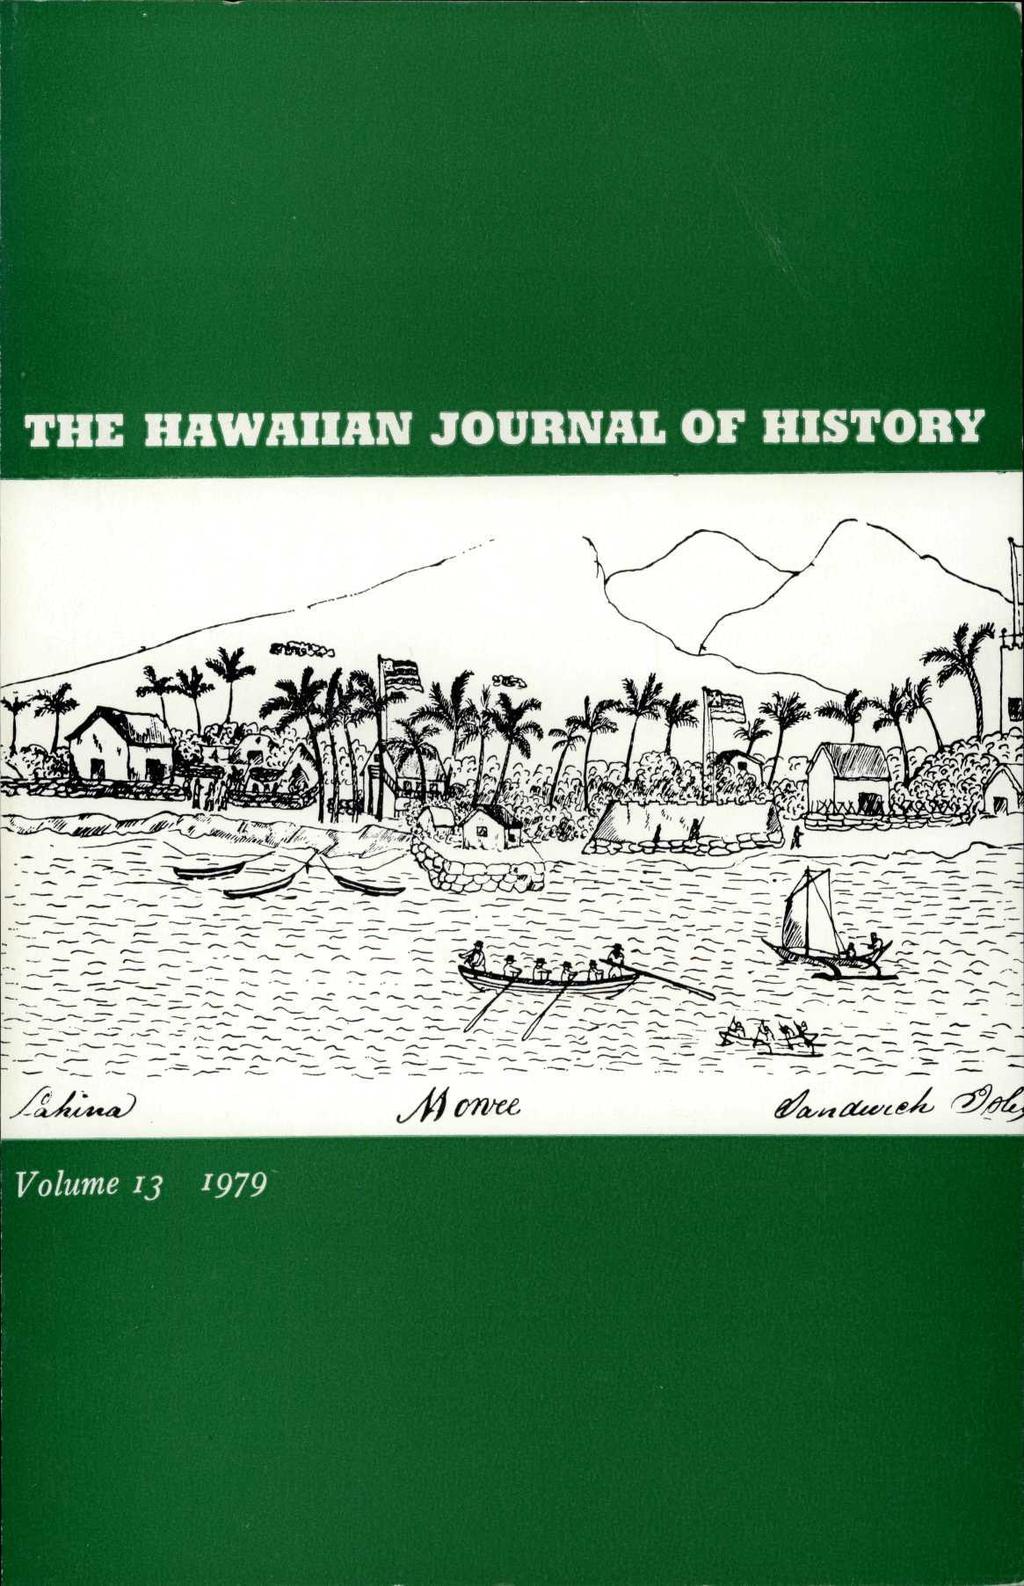 THE HAWAIIAN JOURNAL